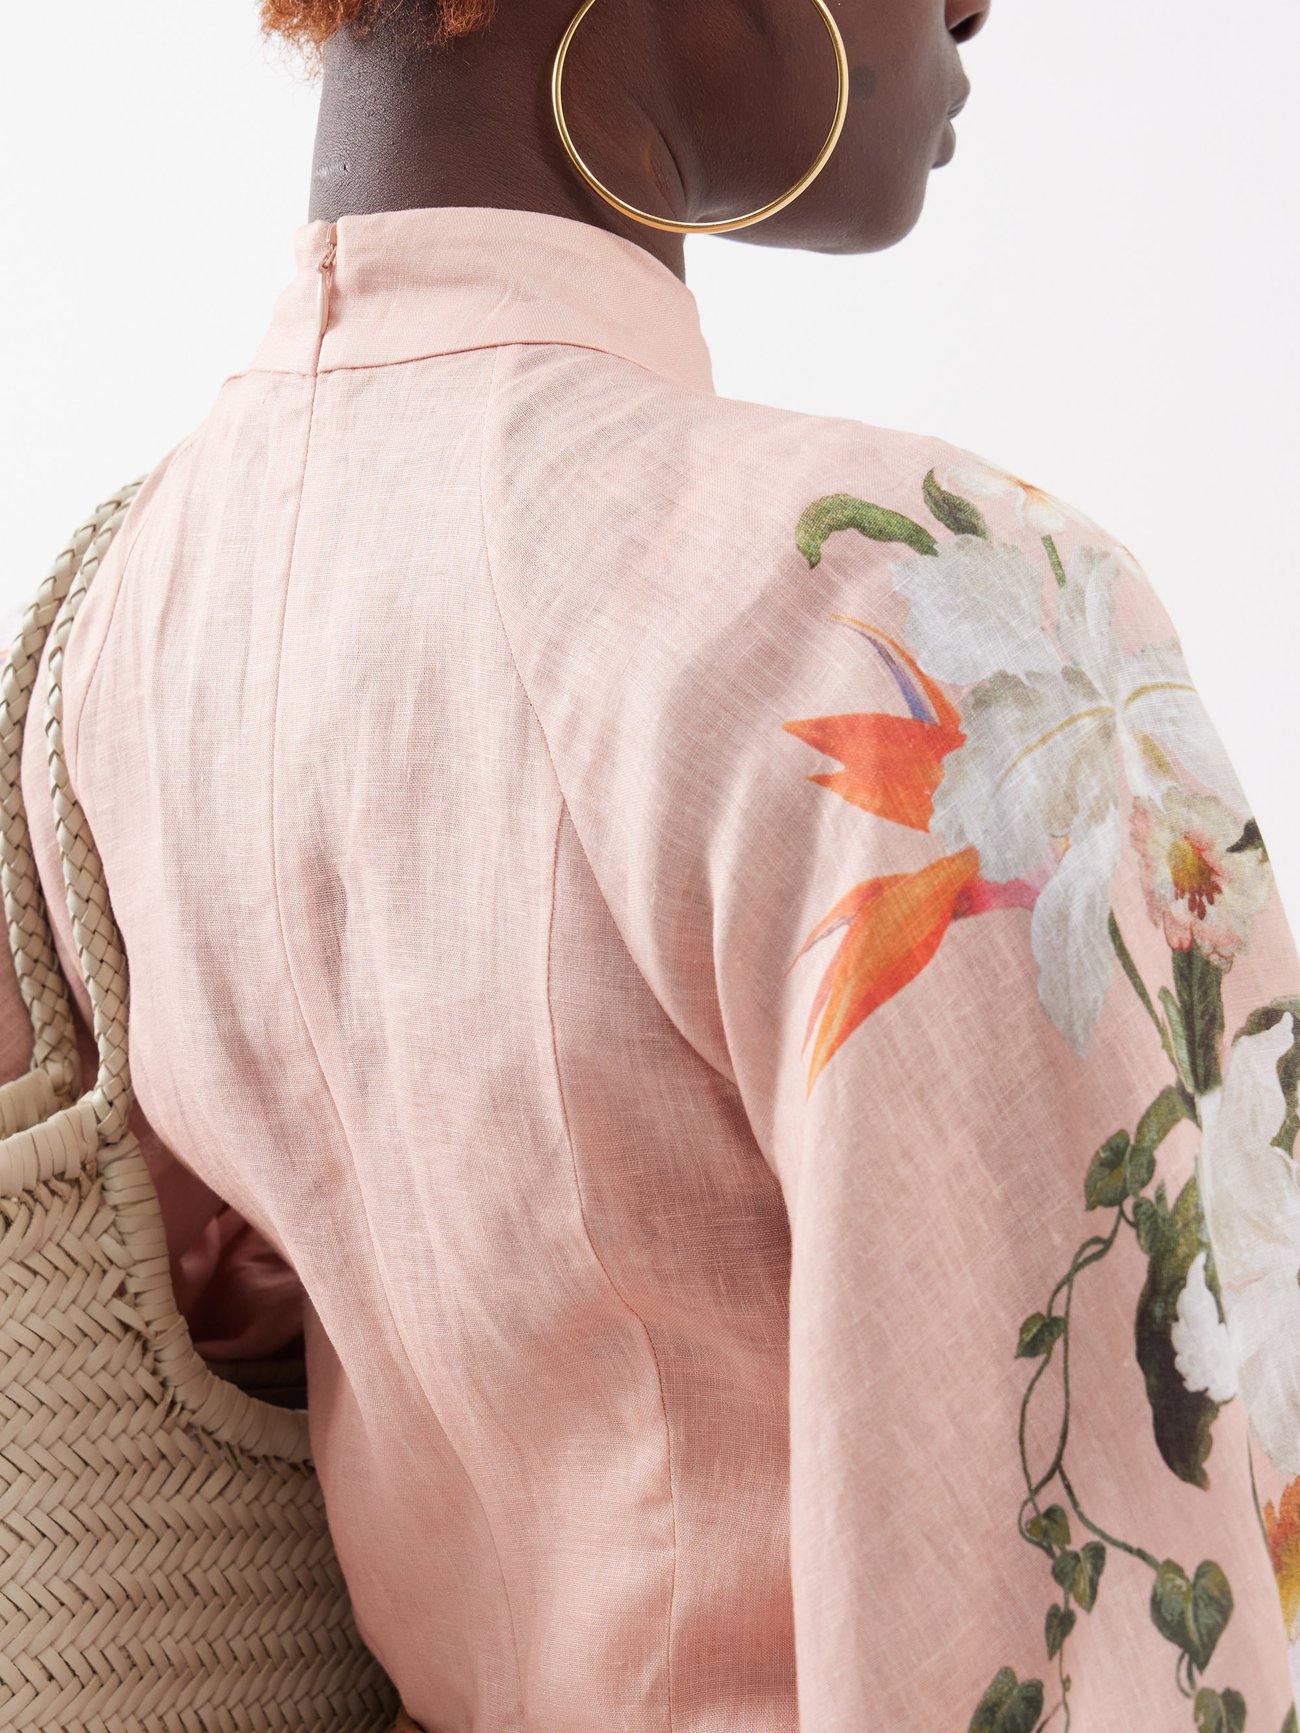 Lexi Billow floral-print linen dress